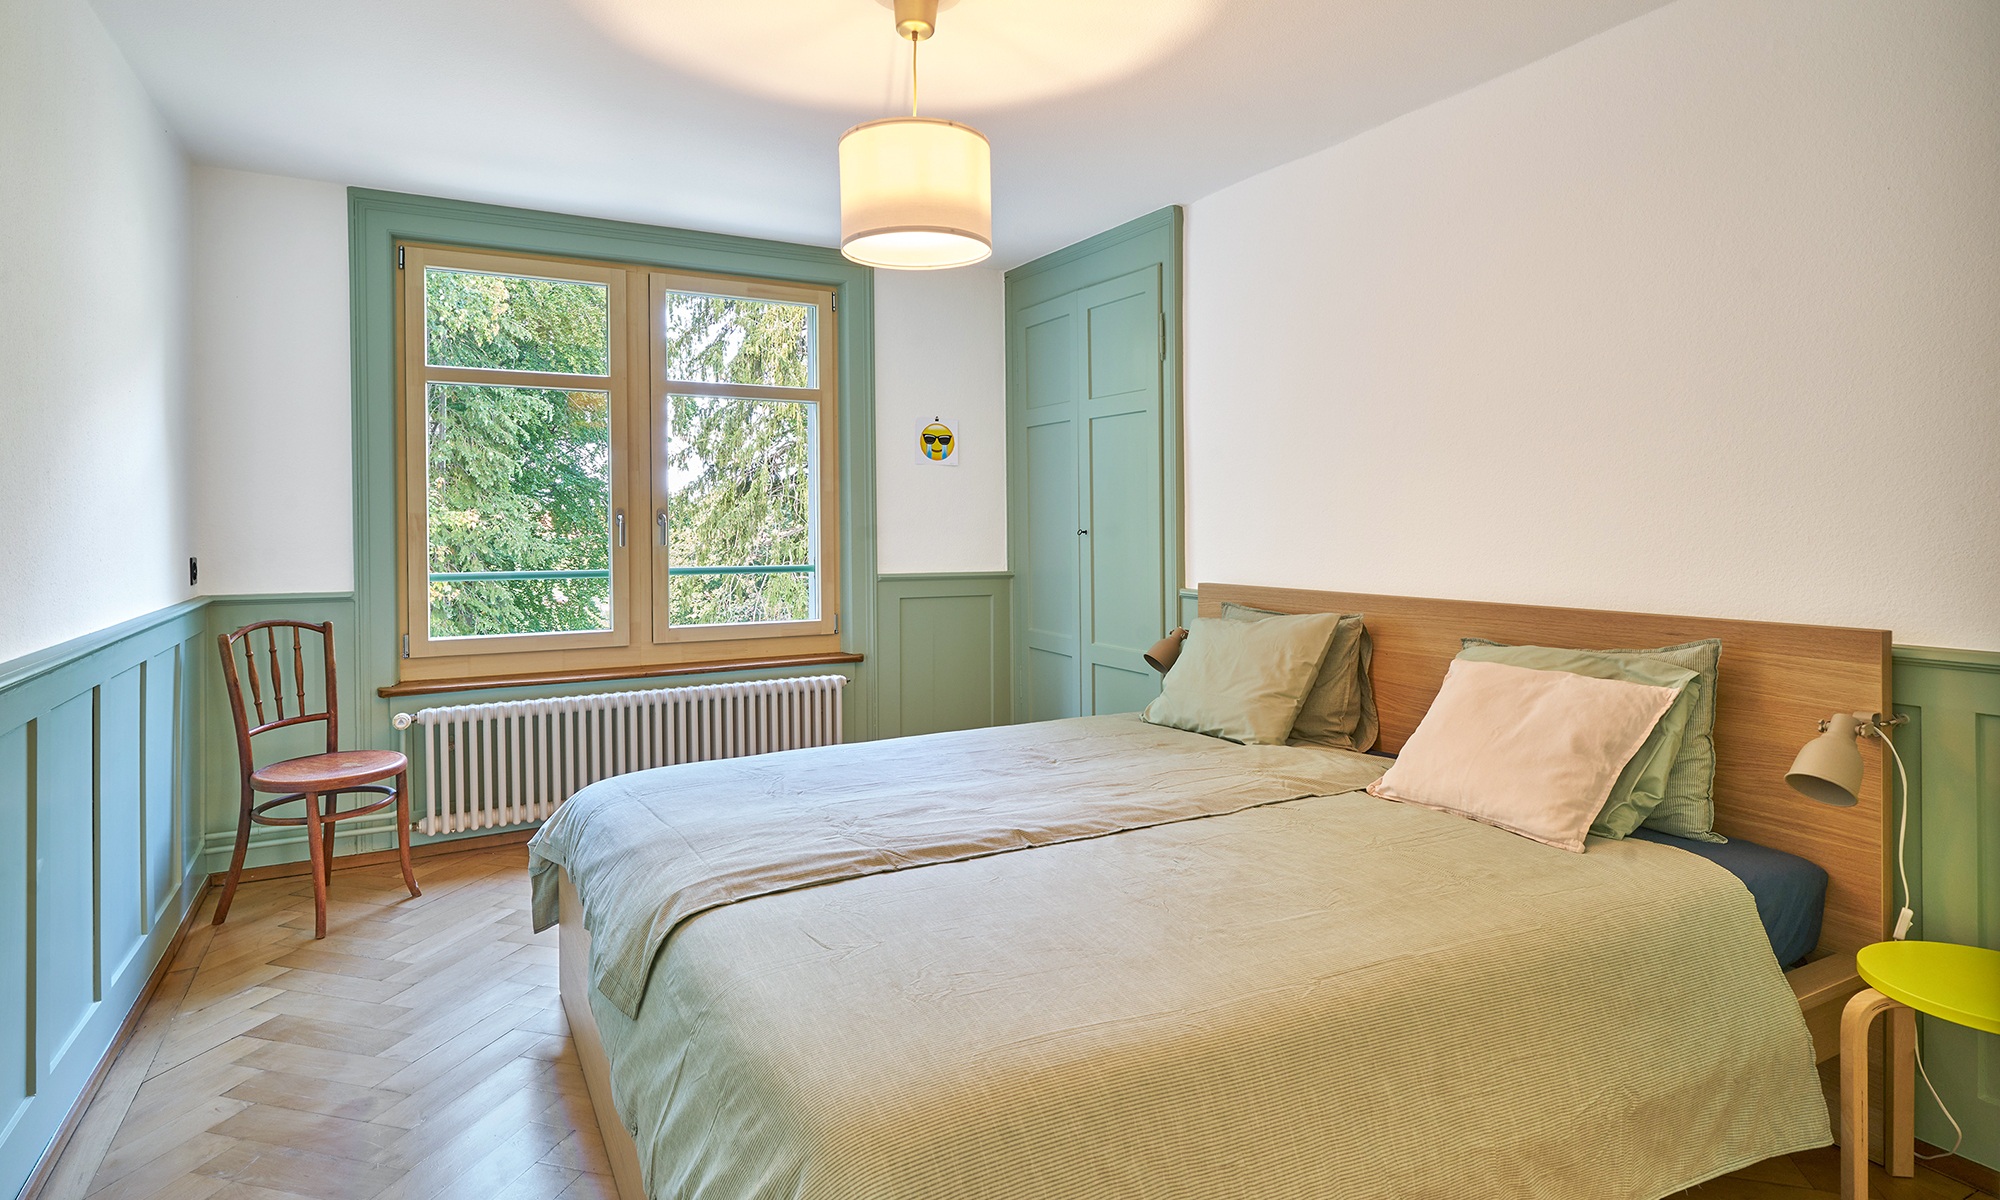 Chambre avec plancher en bois et touches de vert clair